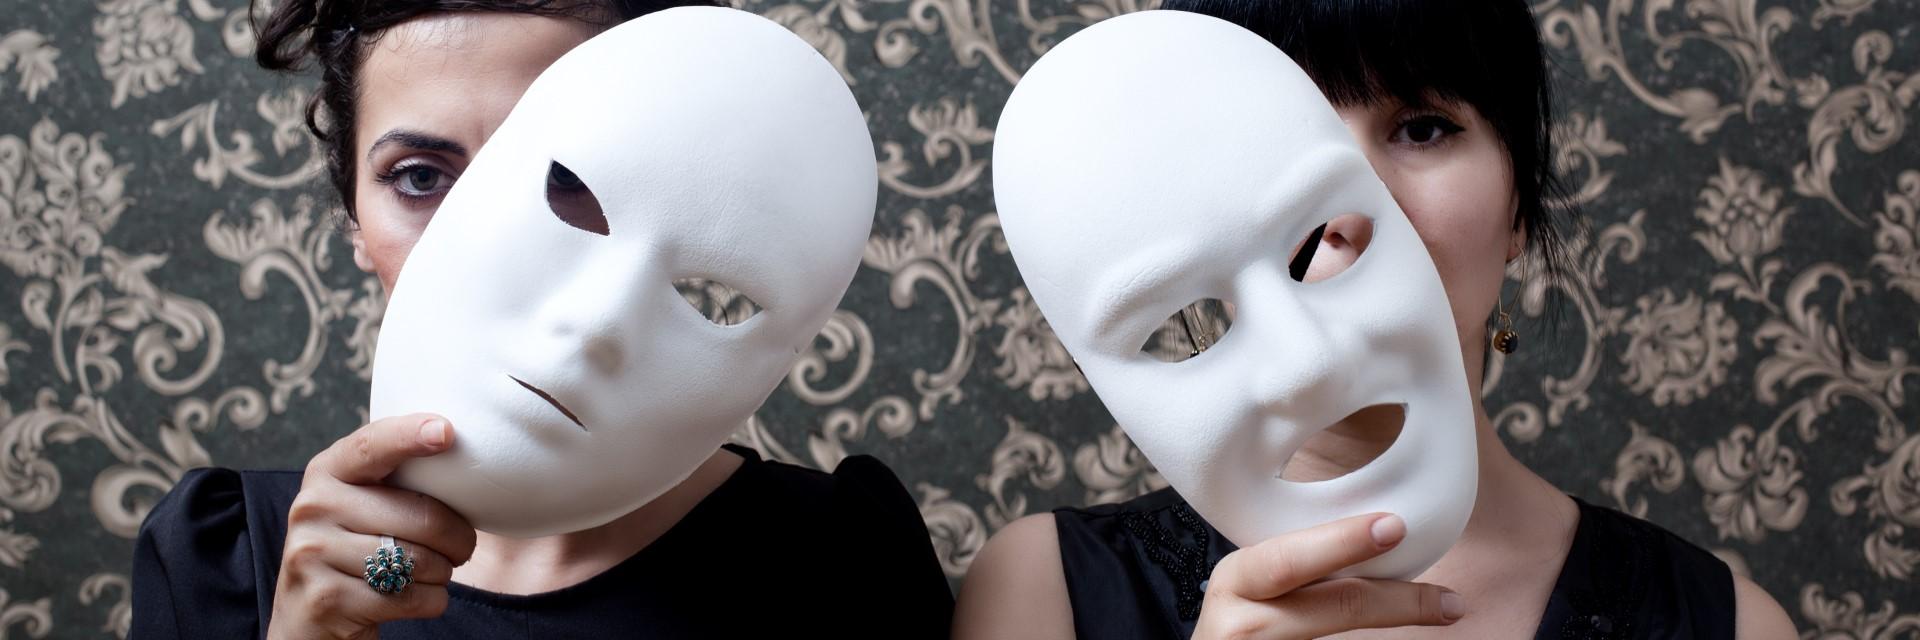 vrouwen, witte maskers, klassiek behang, authenticiteit